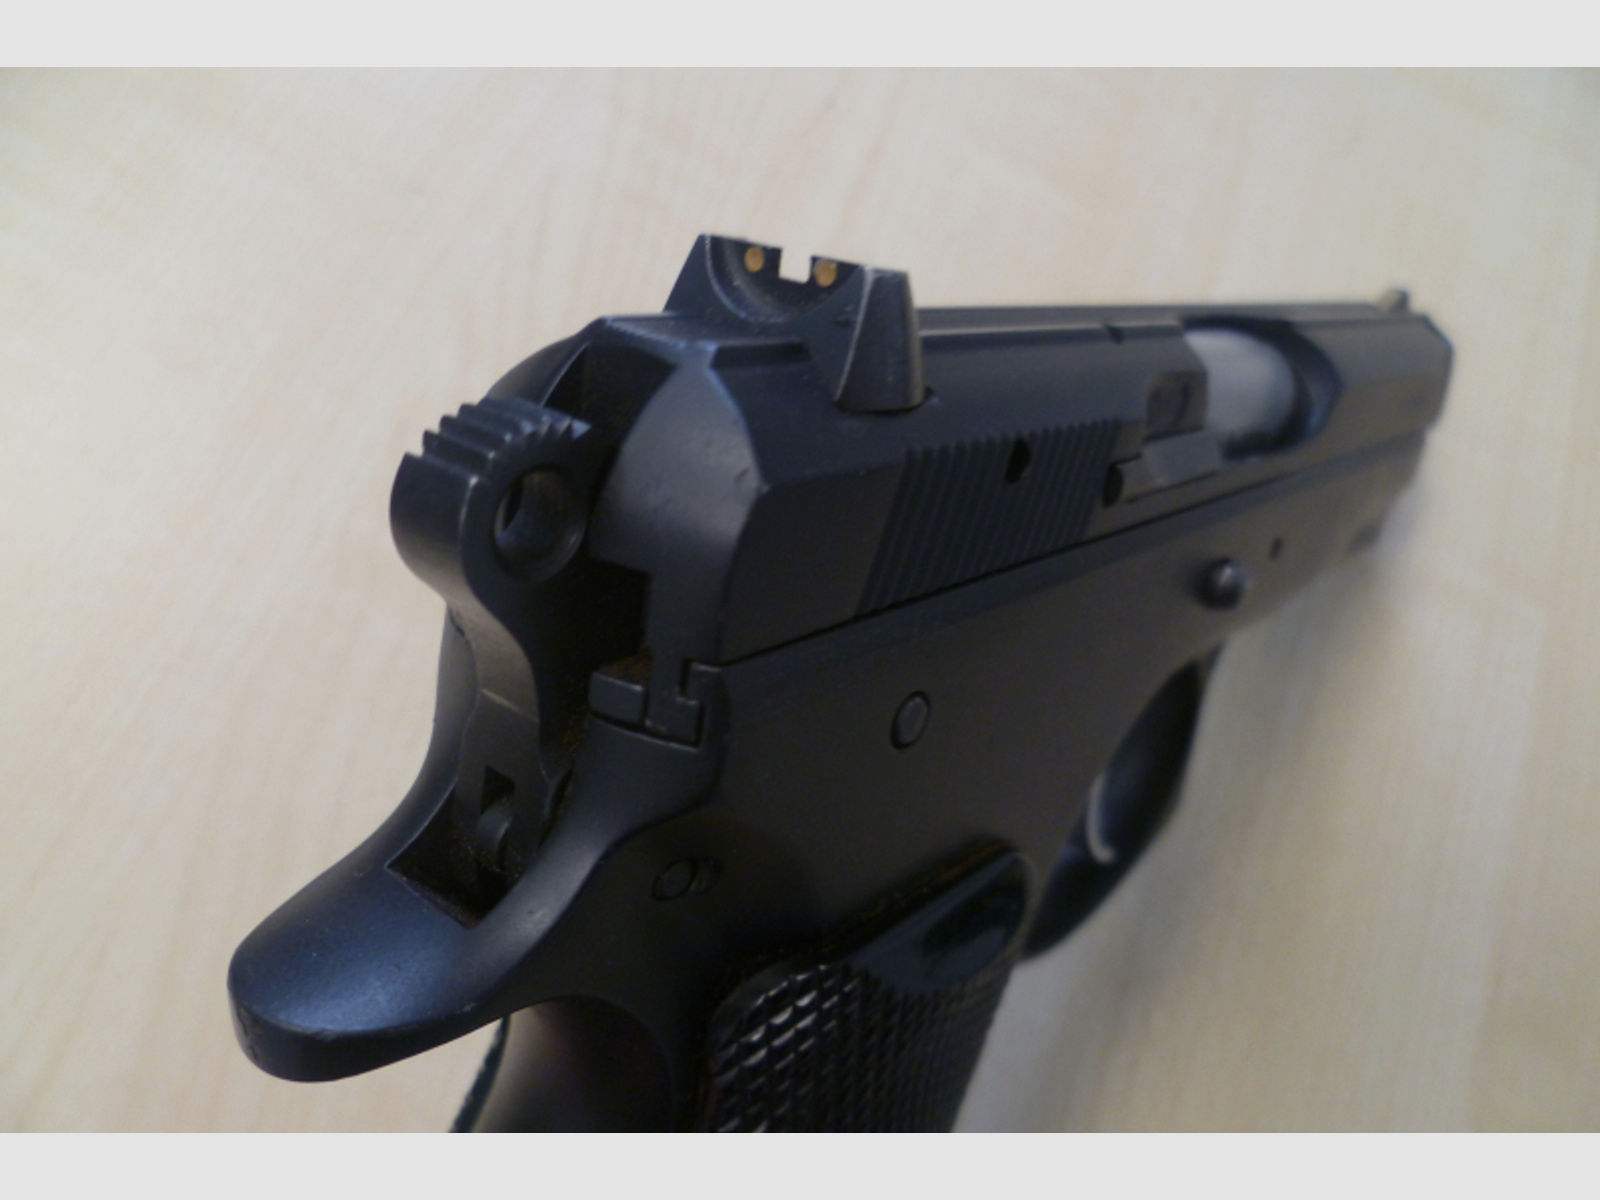 Pistole CZ 75 Compact 9mm Luger